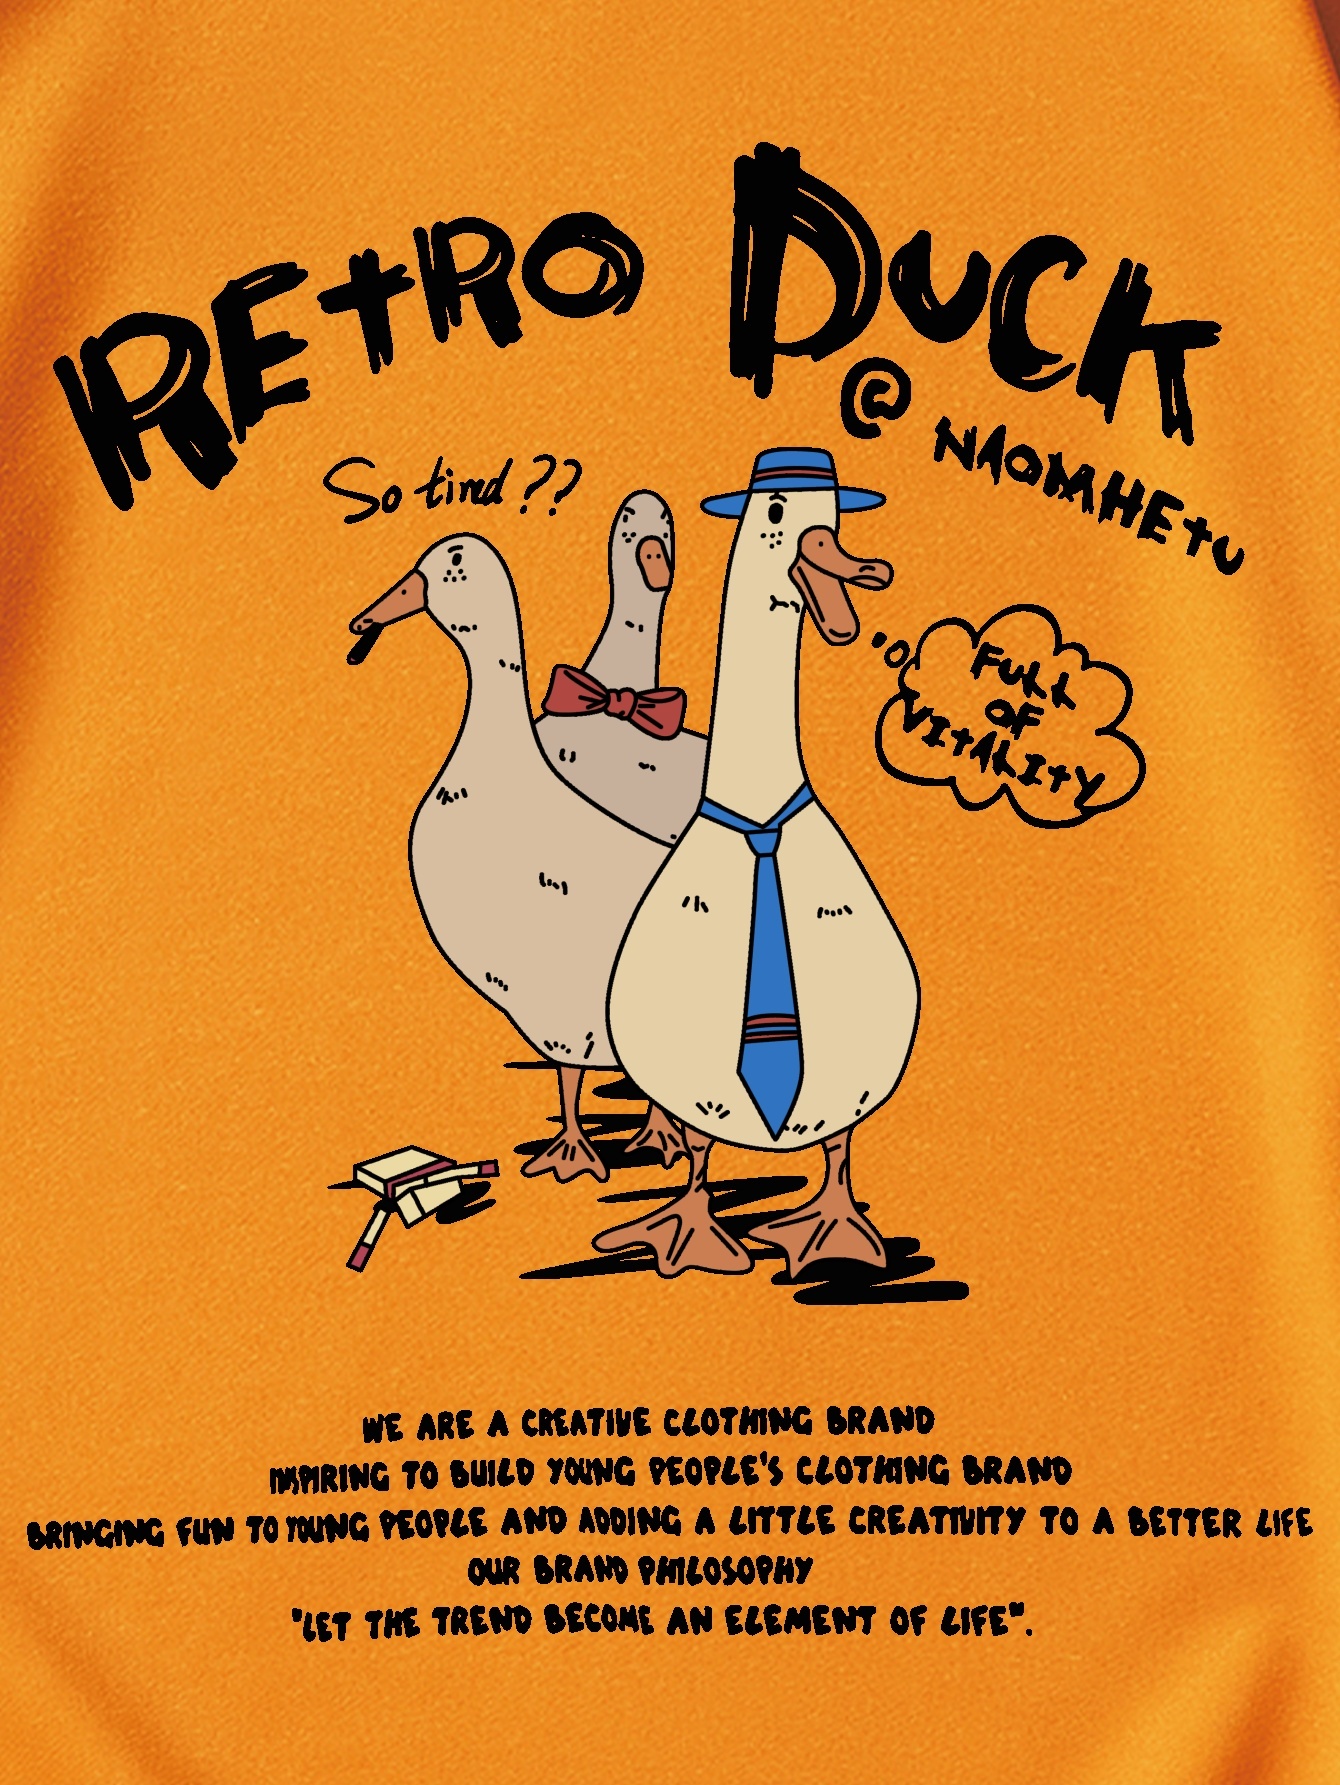 Duck Off Short Sleeve Shirt